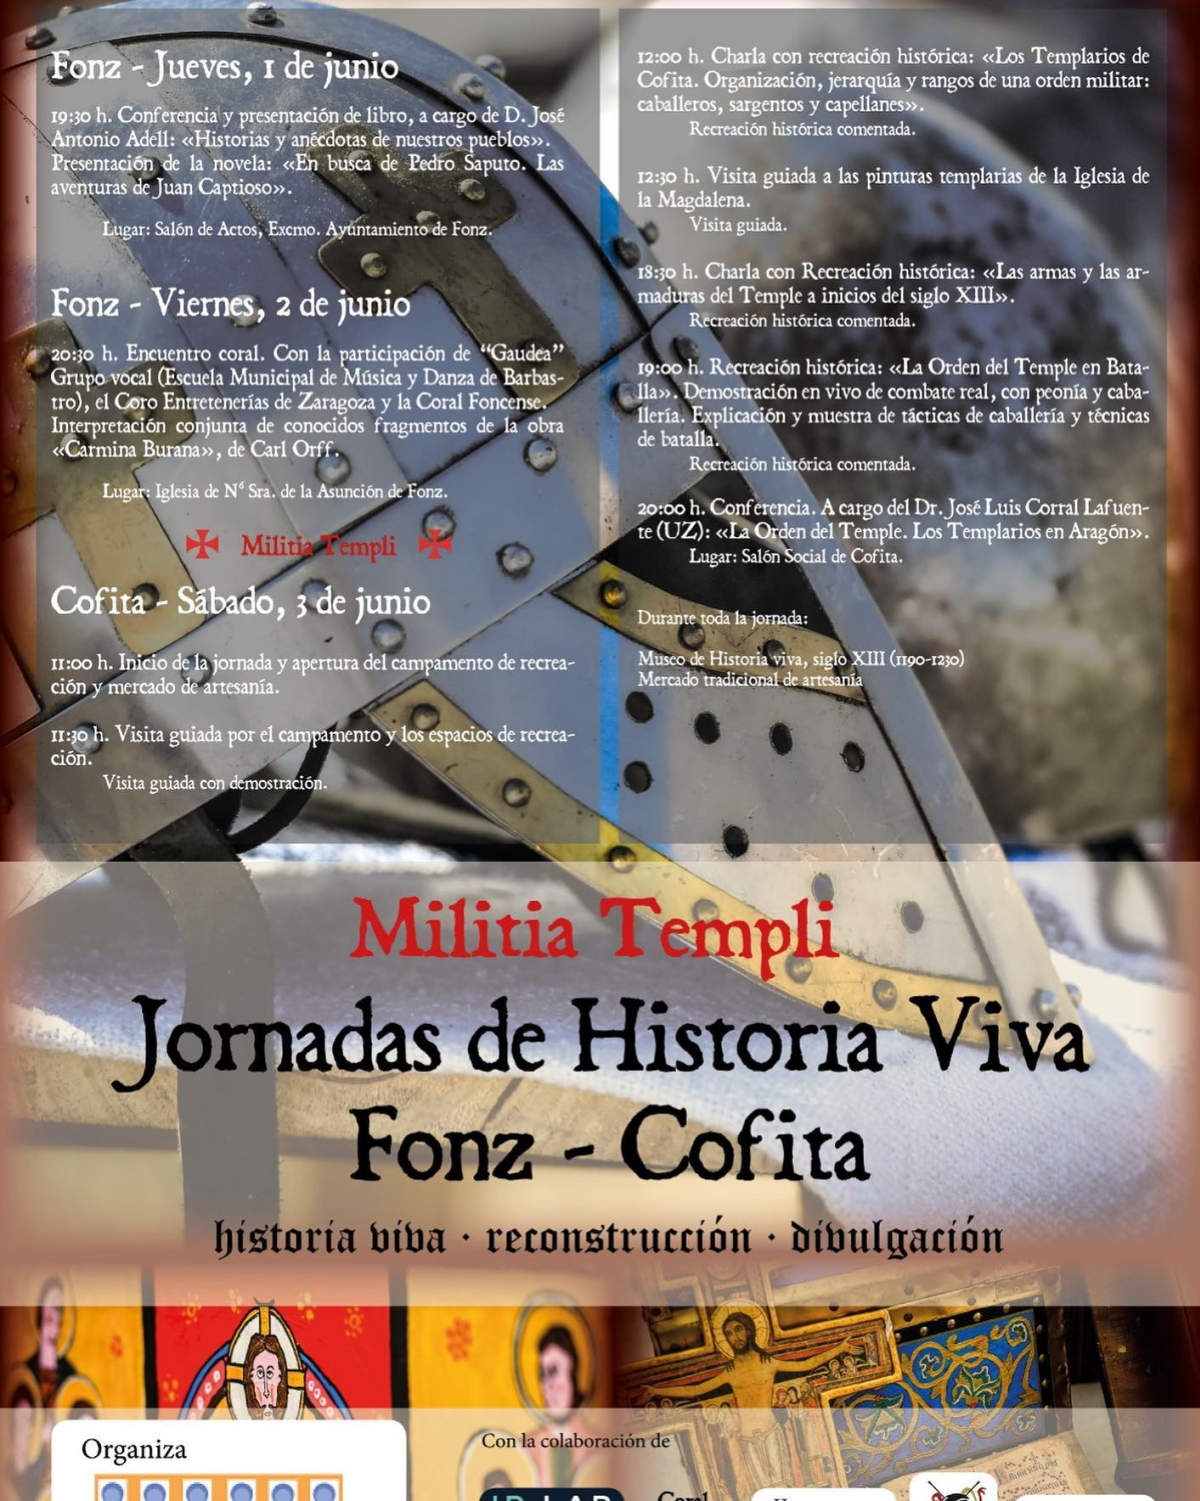 Jornadas de Historia Viva Fonz - Cofita